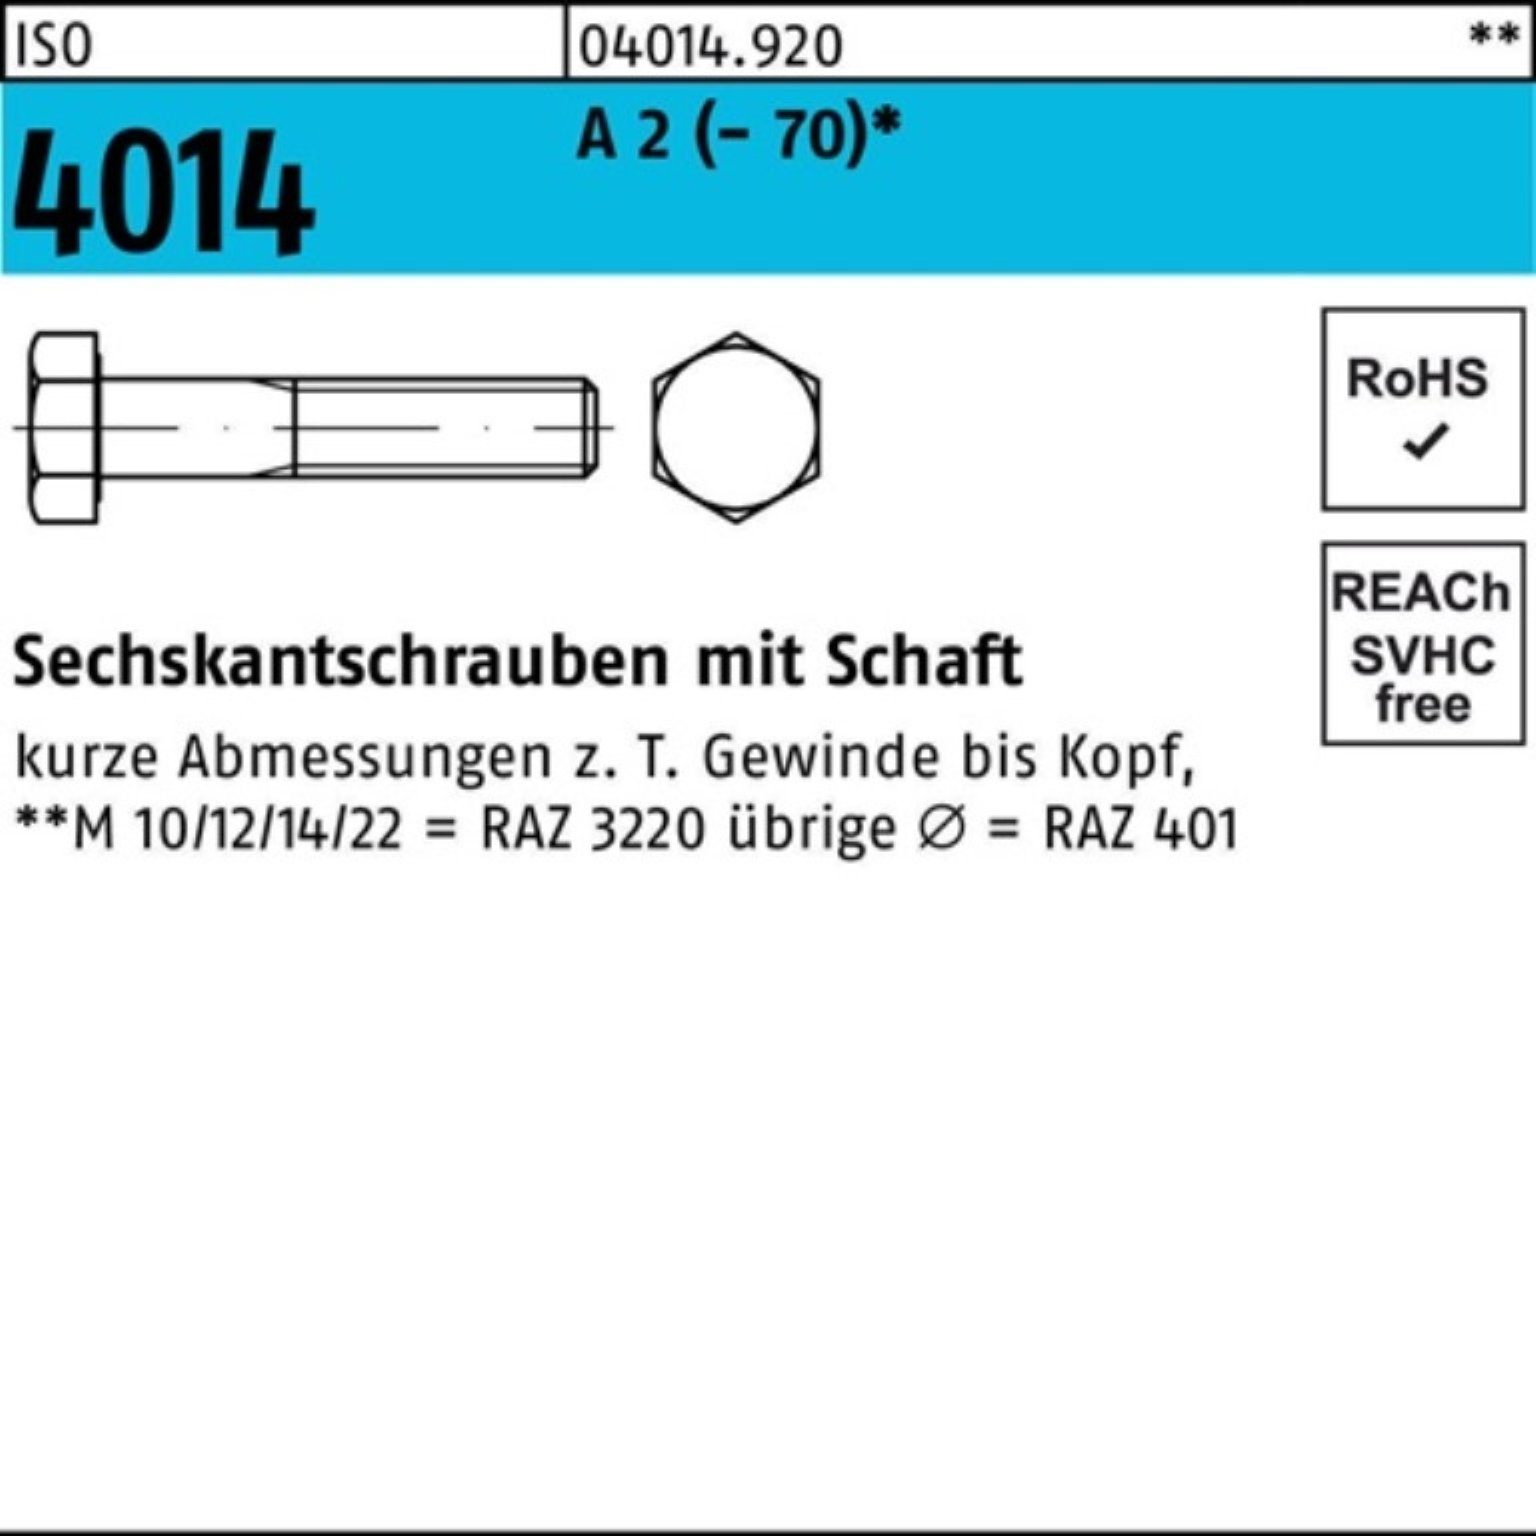 Bufab Sechskantschraube 100er Pack Sechskantschraube ISO 4014 Schaft M22x 130 A 2 (70) 1 St